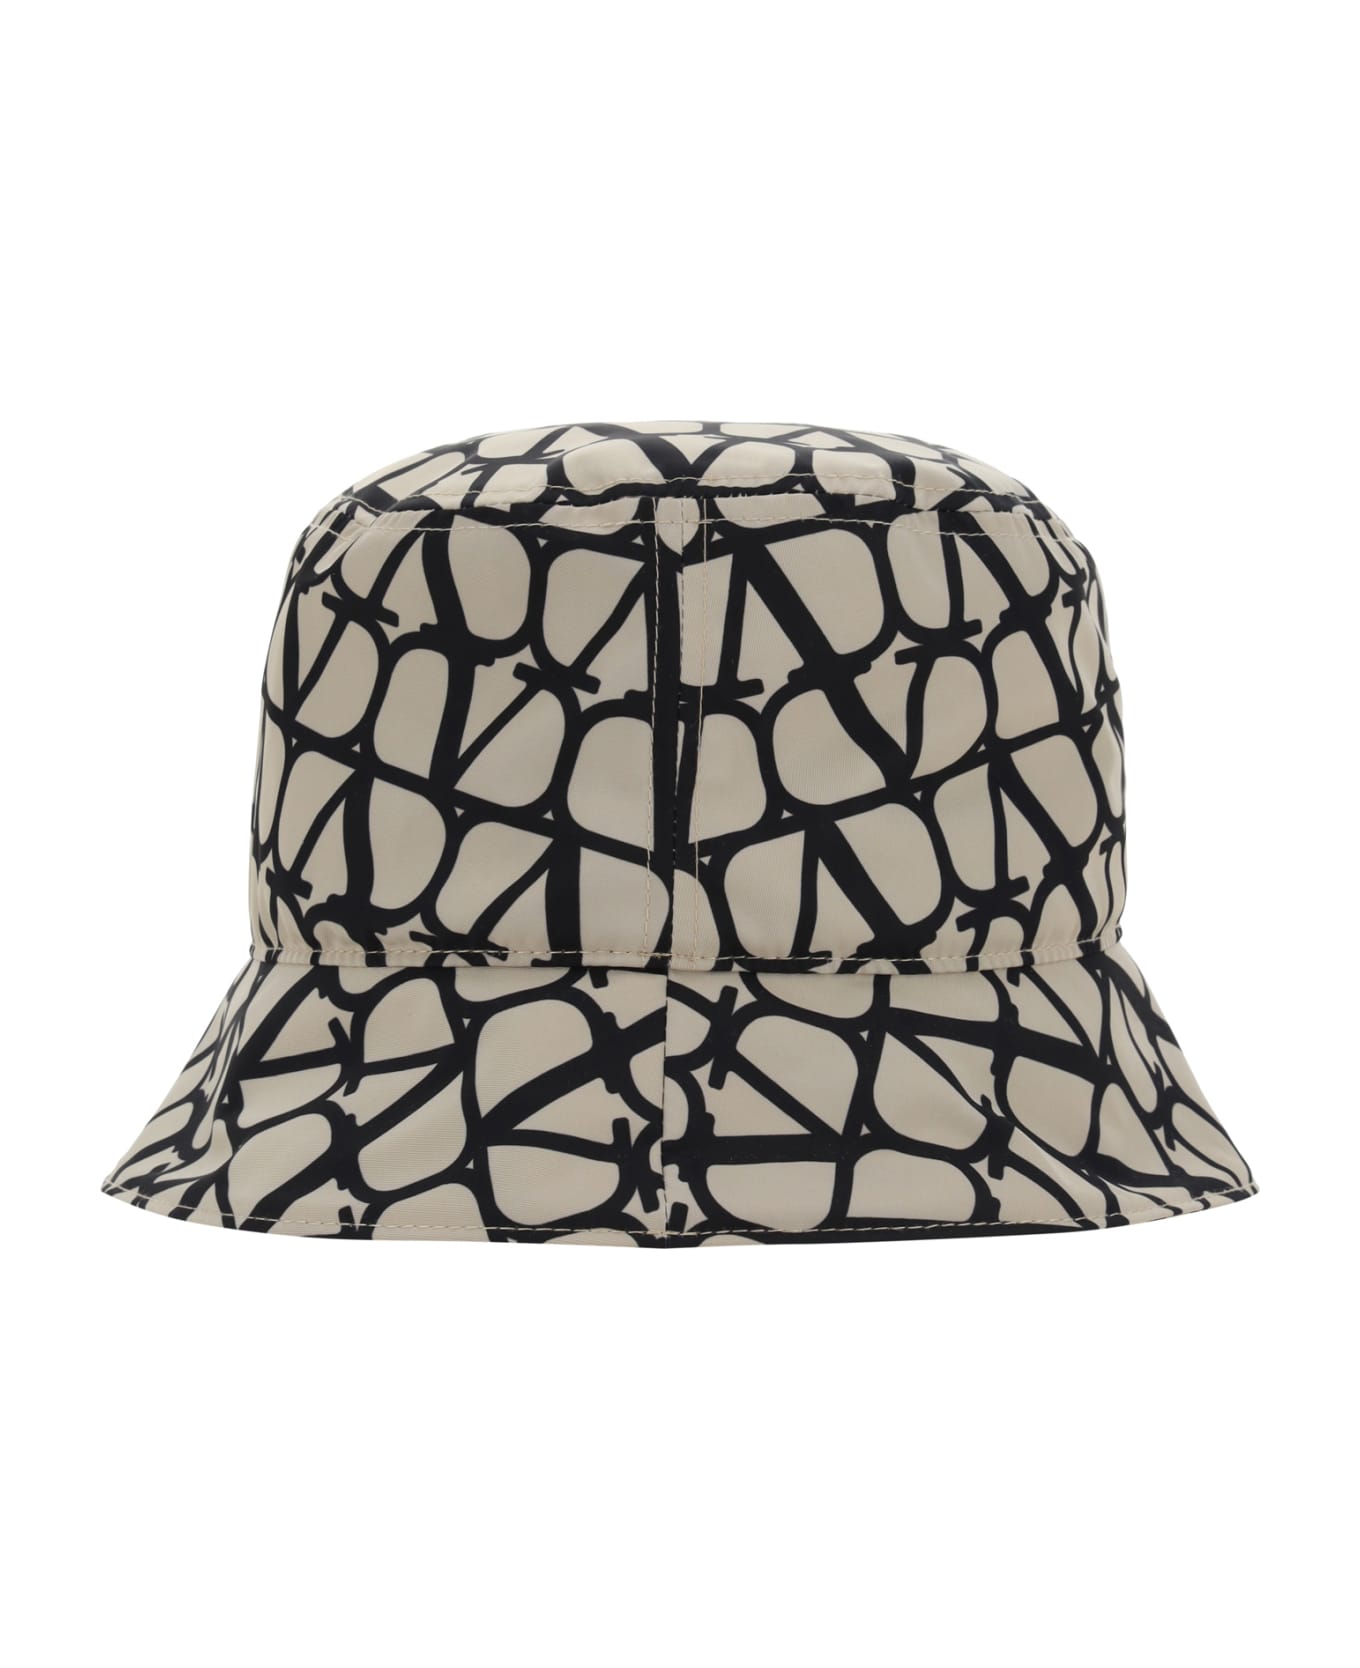 Valentino Garavani Bucket Hat - Beige/nero